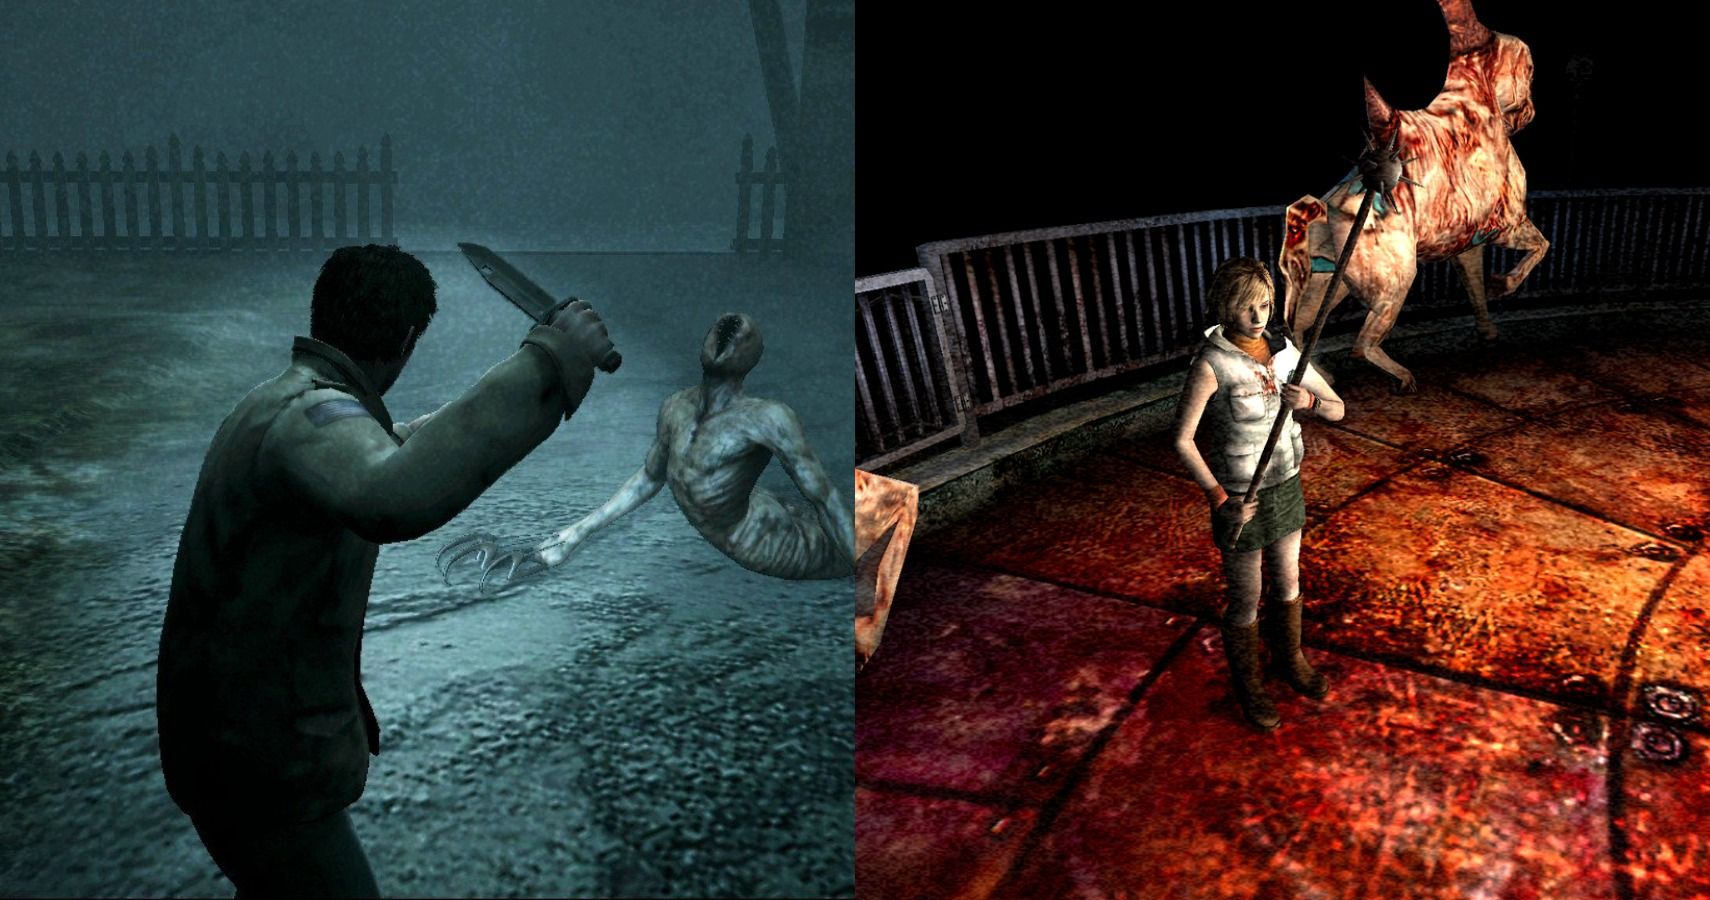 Silent Hill: Downpour - Metacritic